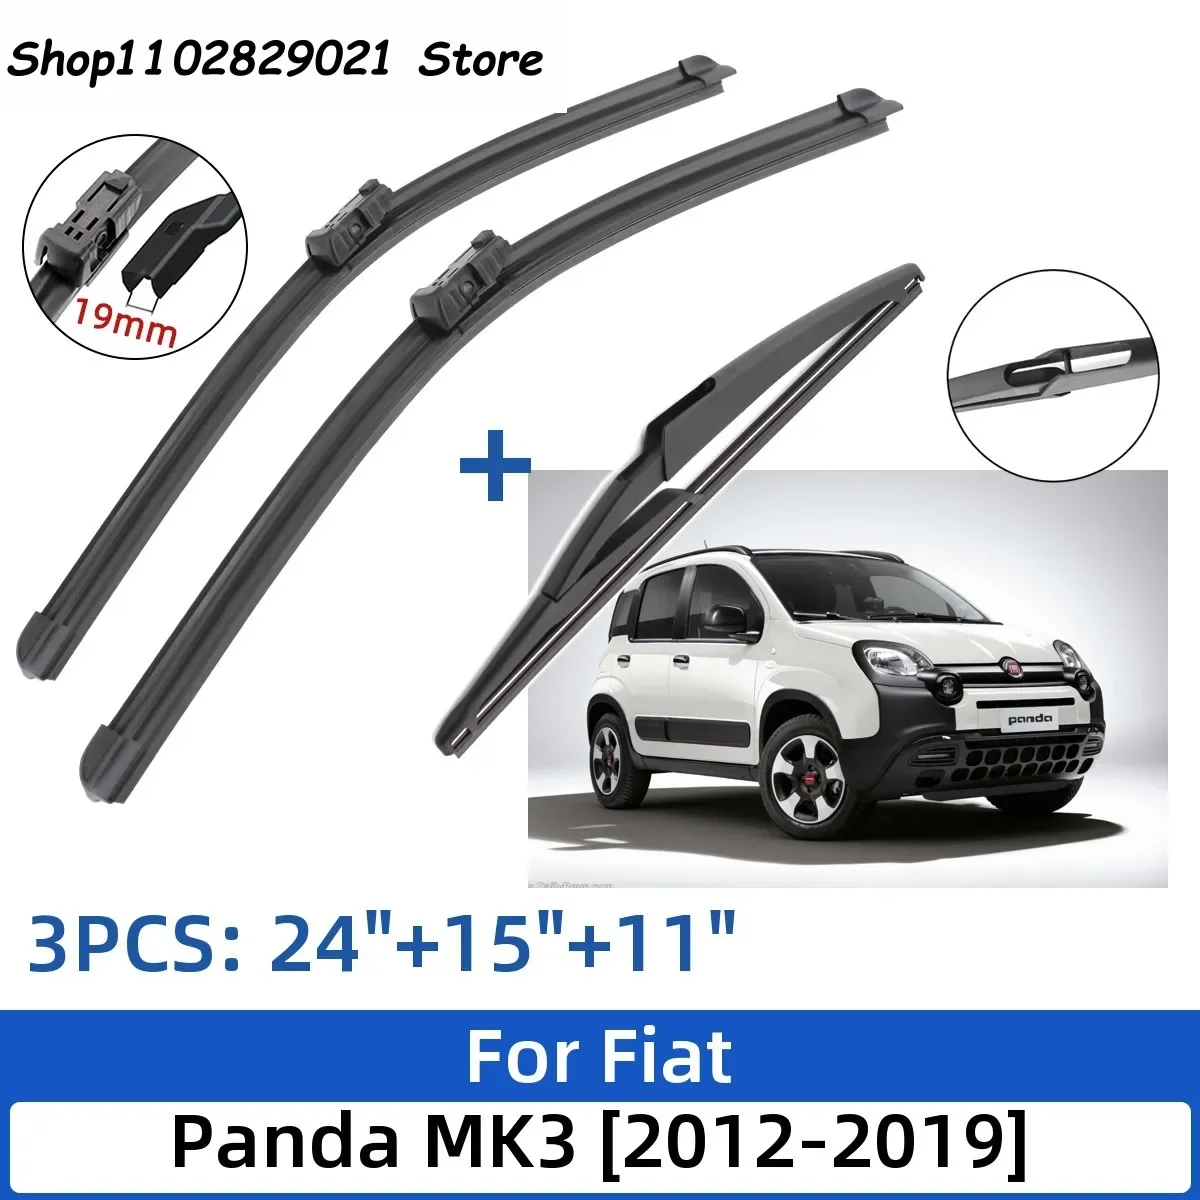 

For Fiat Panda MK3 2012-2019 24"+15"+11" Front Rear Wiper Blades Windshield Windscreen Window Cutter Accessories 2017 2018 2019